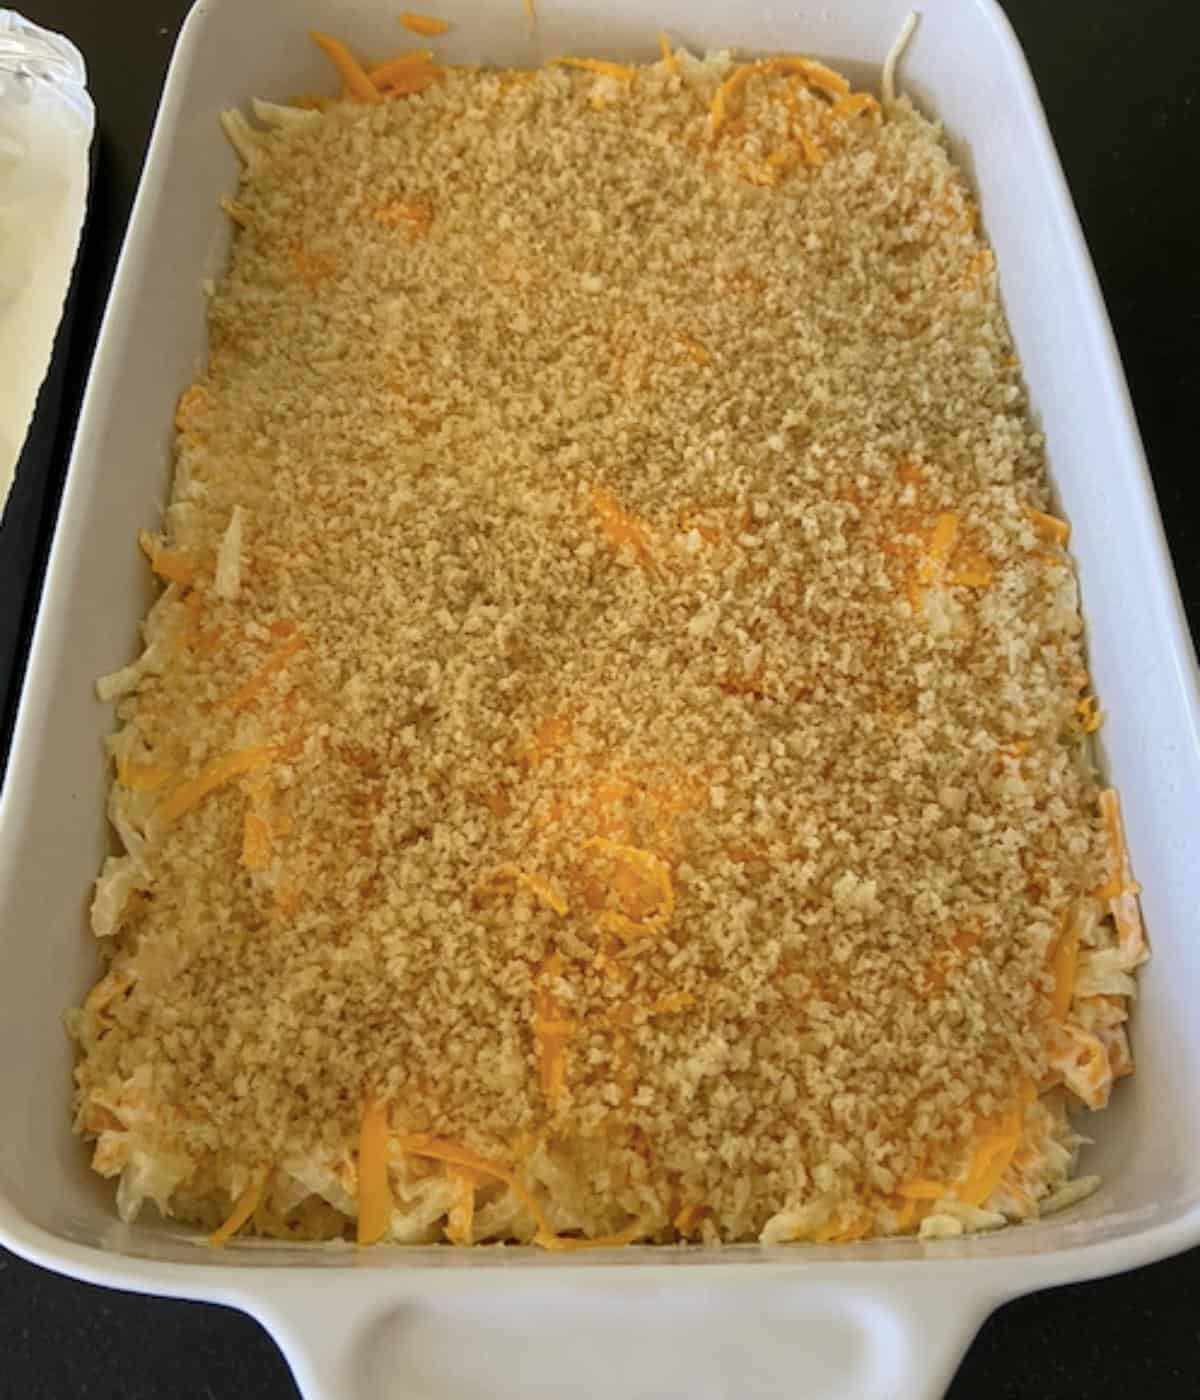 cheesy potato casserole in 9x13 dish ready to bake